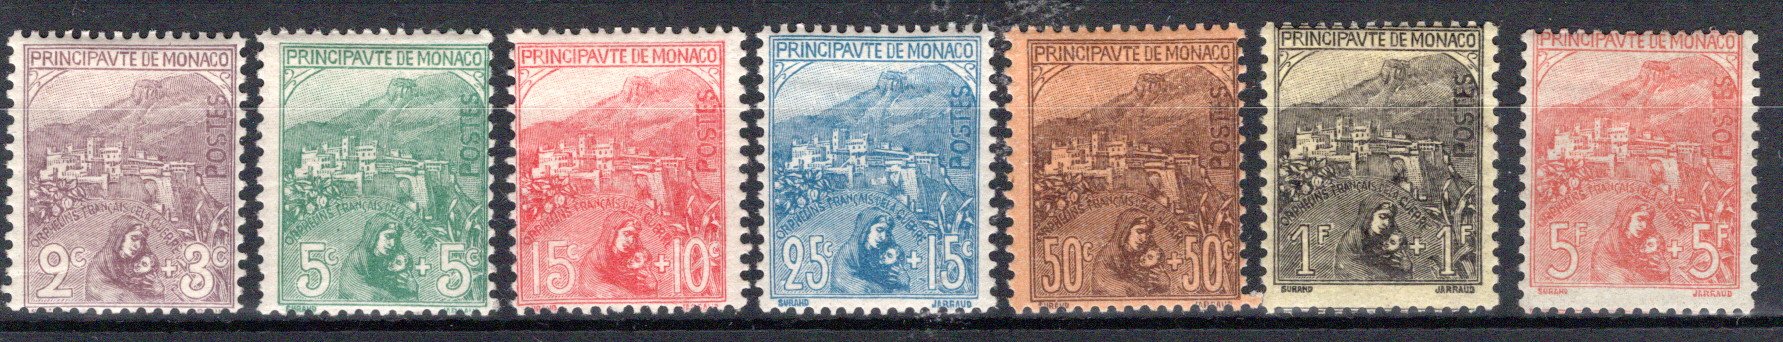 Lot 1064 - europe Monaco -  Georg Bühler Briefmarken Auktionen GmbH Georg Bühler 336 auction